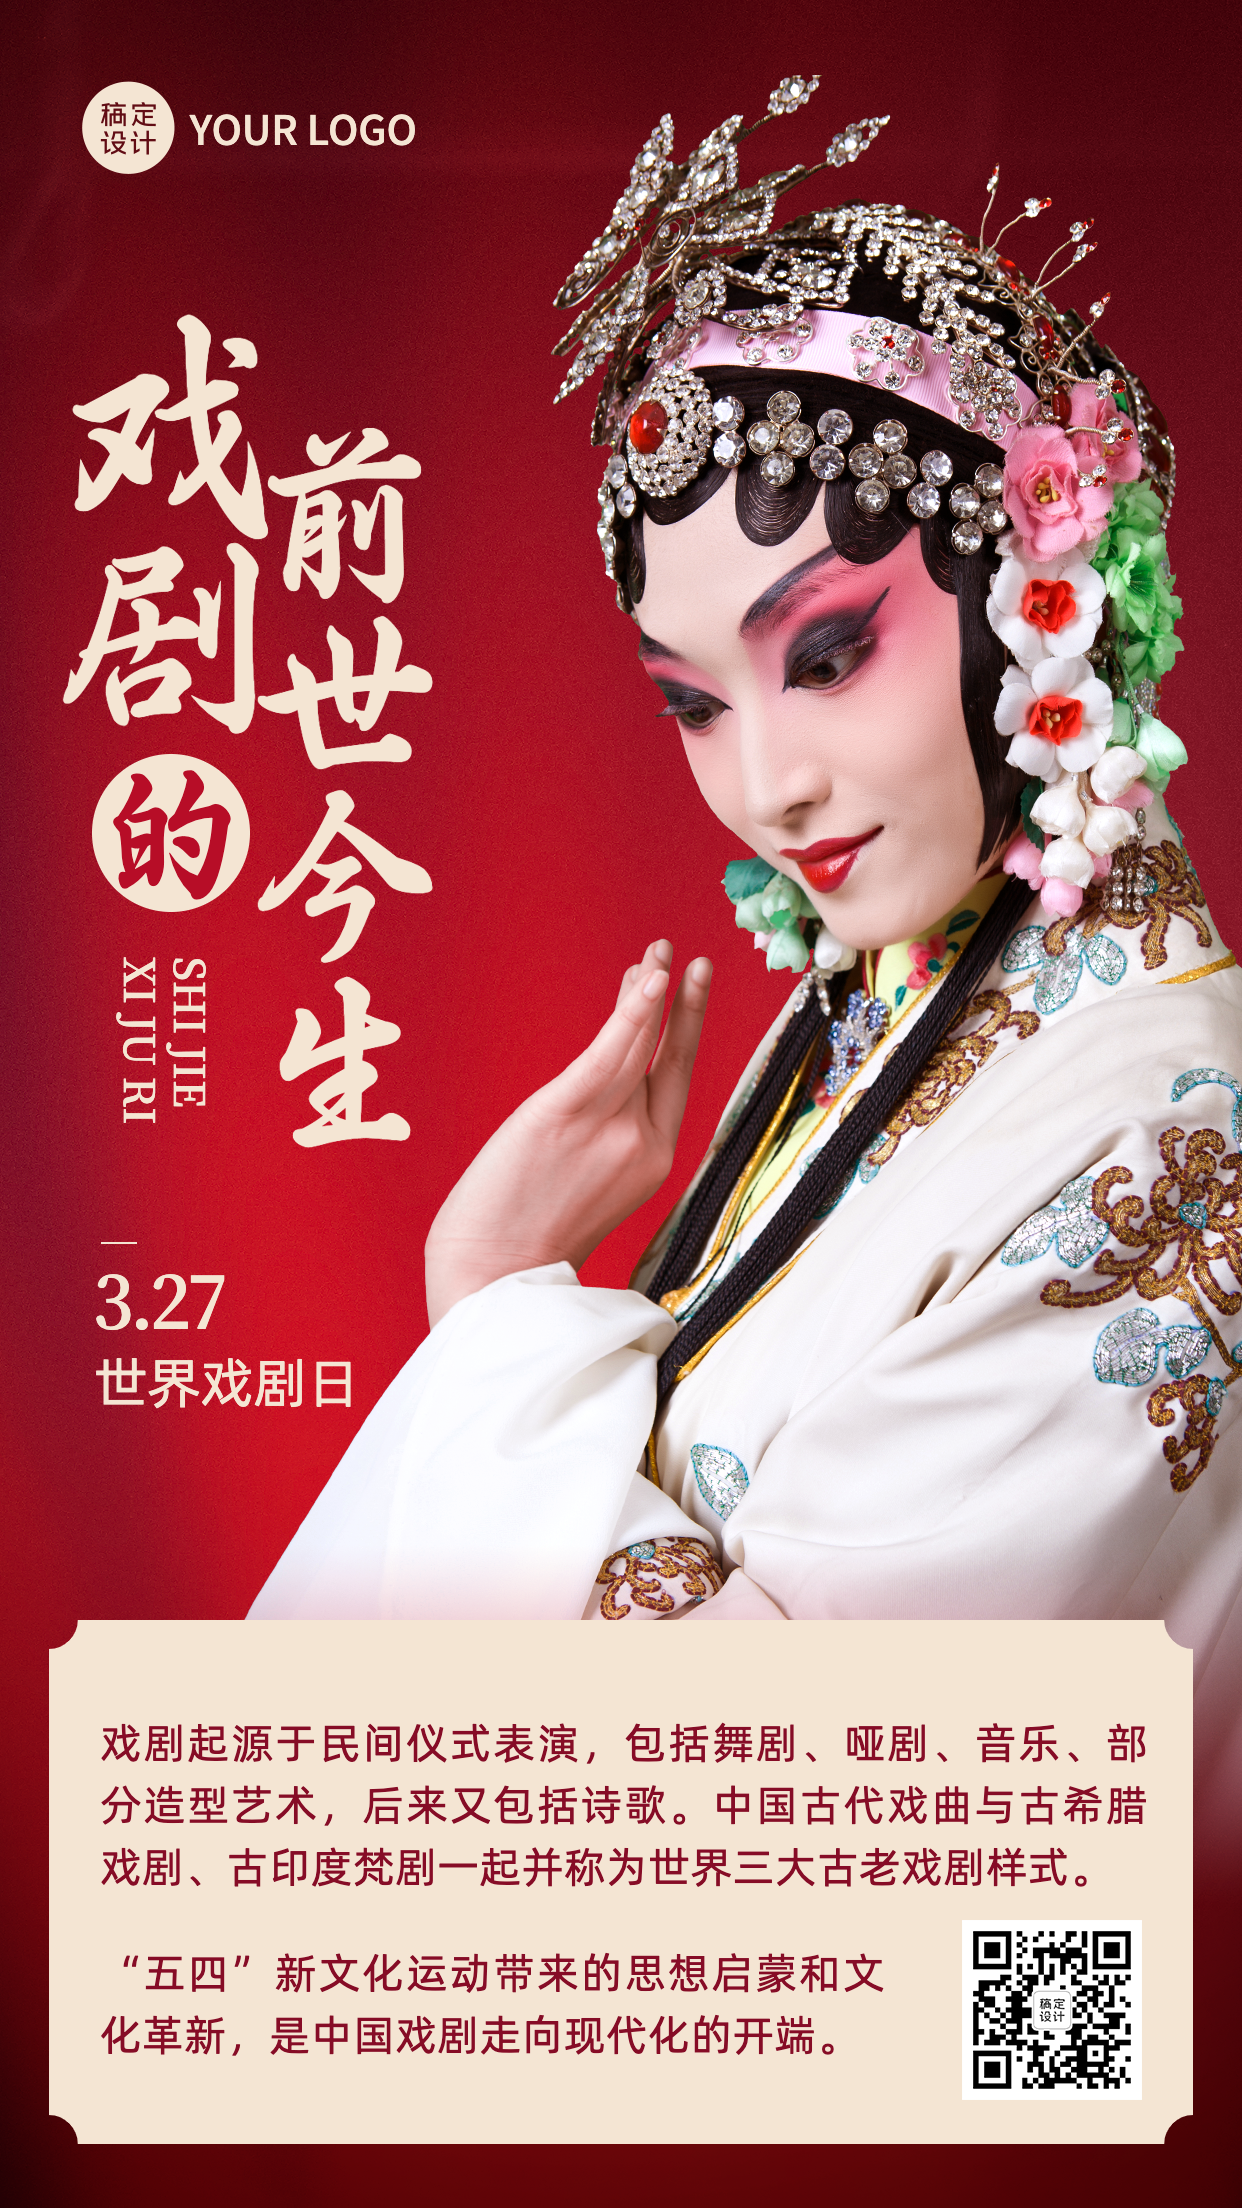 世界戏剧日节日宣传中国风实景手机海报预览效果